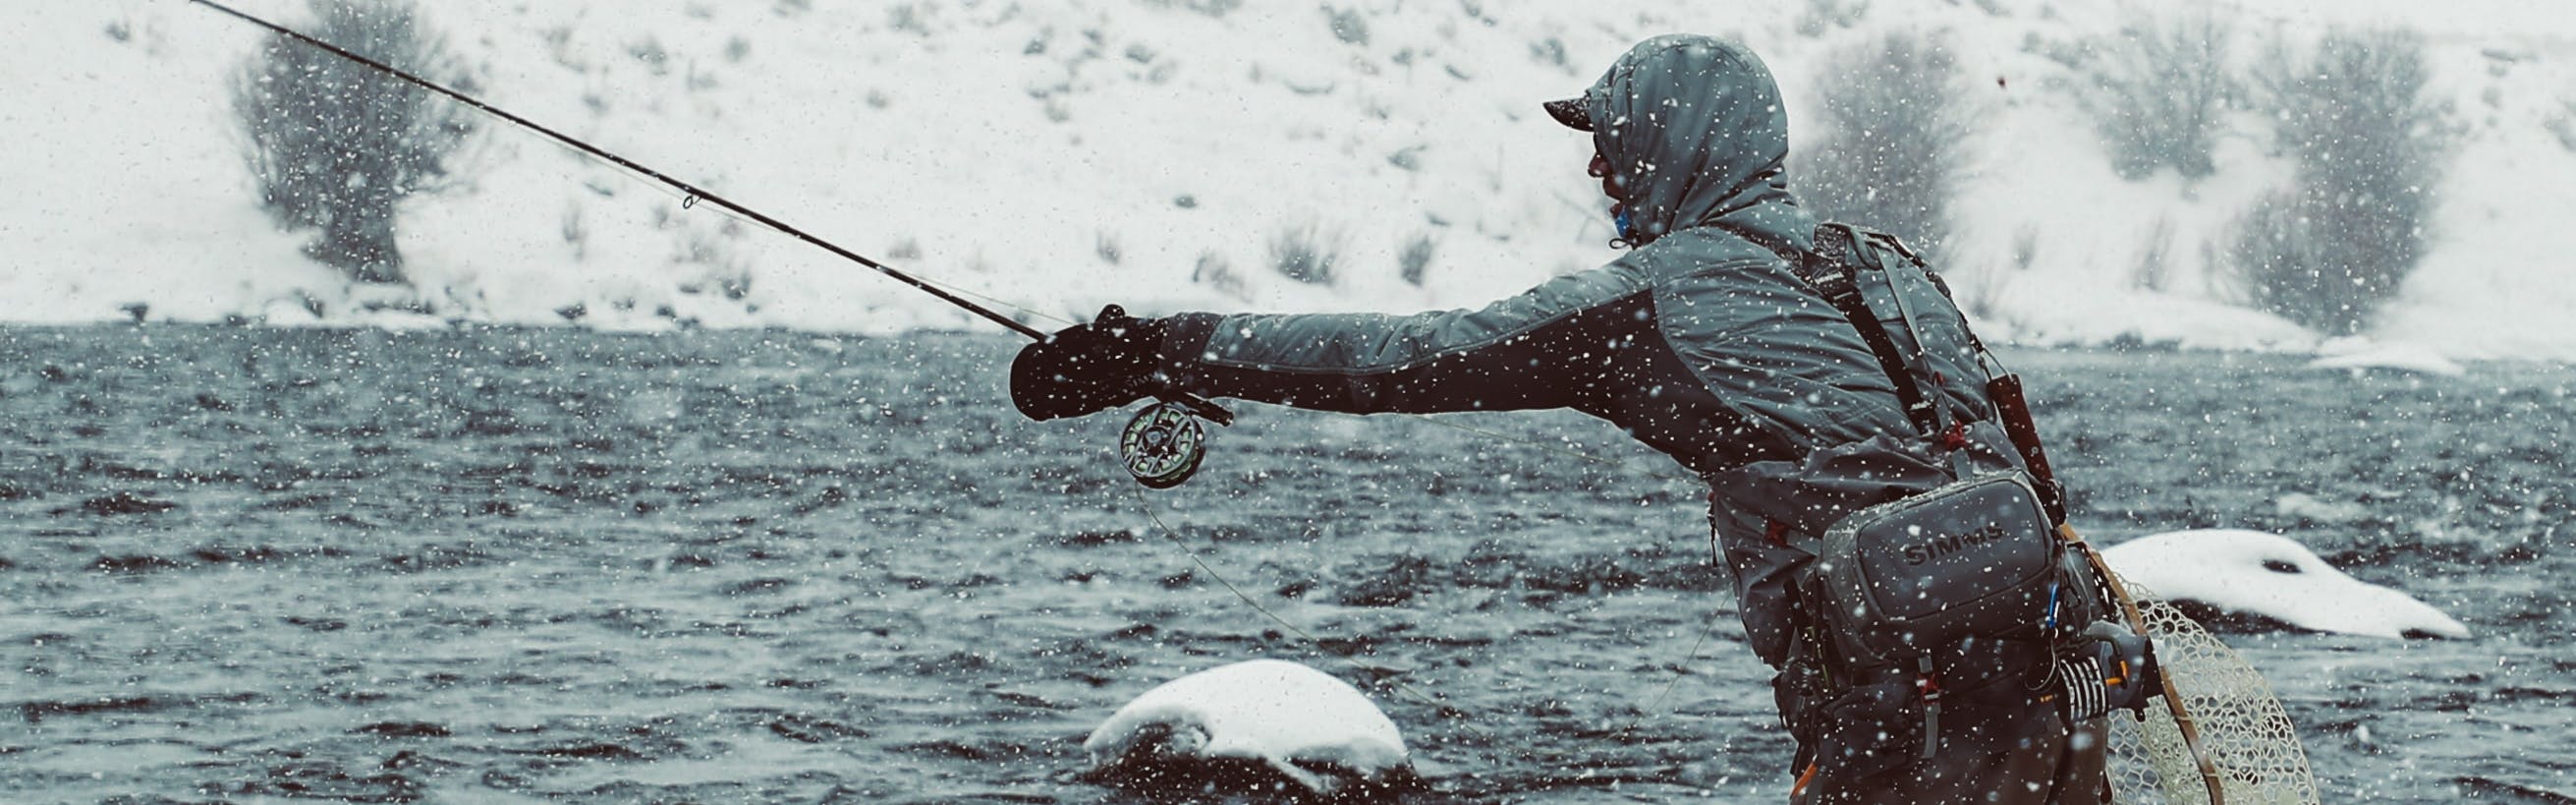 Man in jacket fly fishing in winter